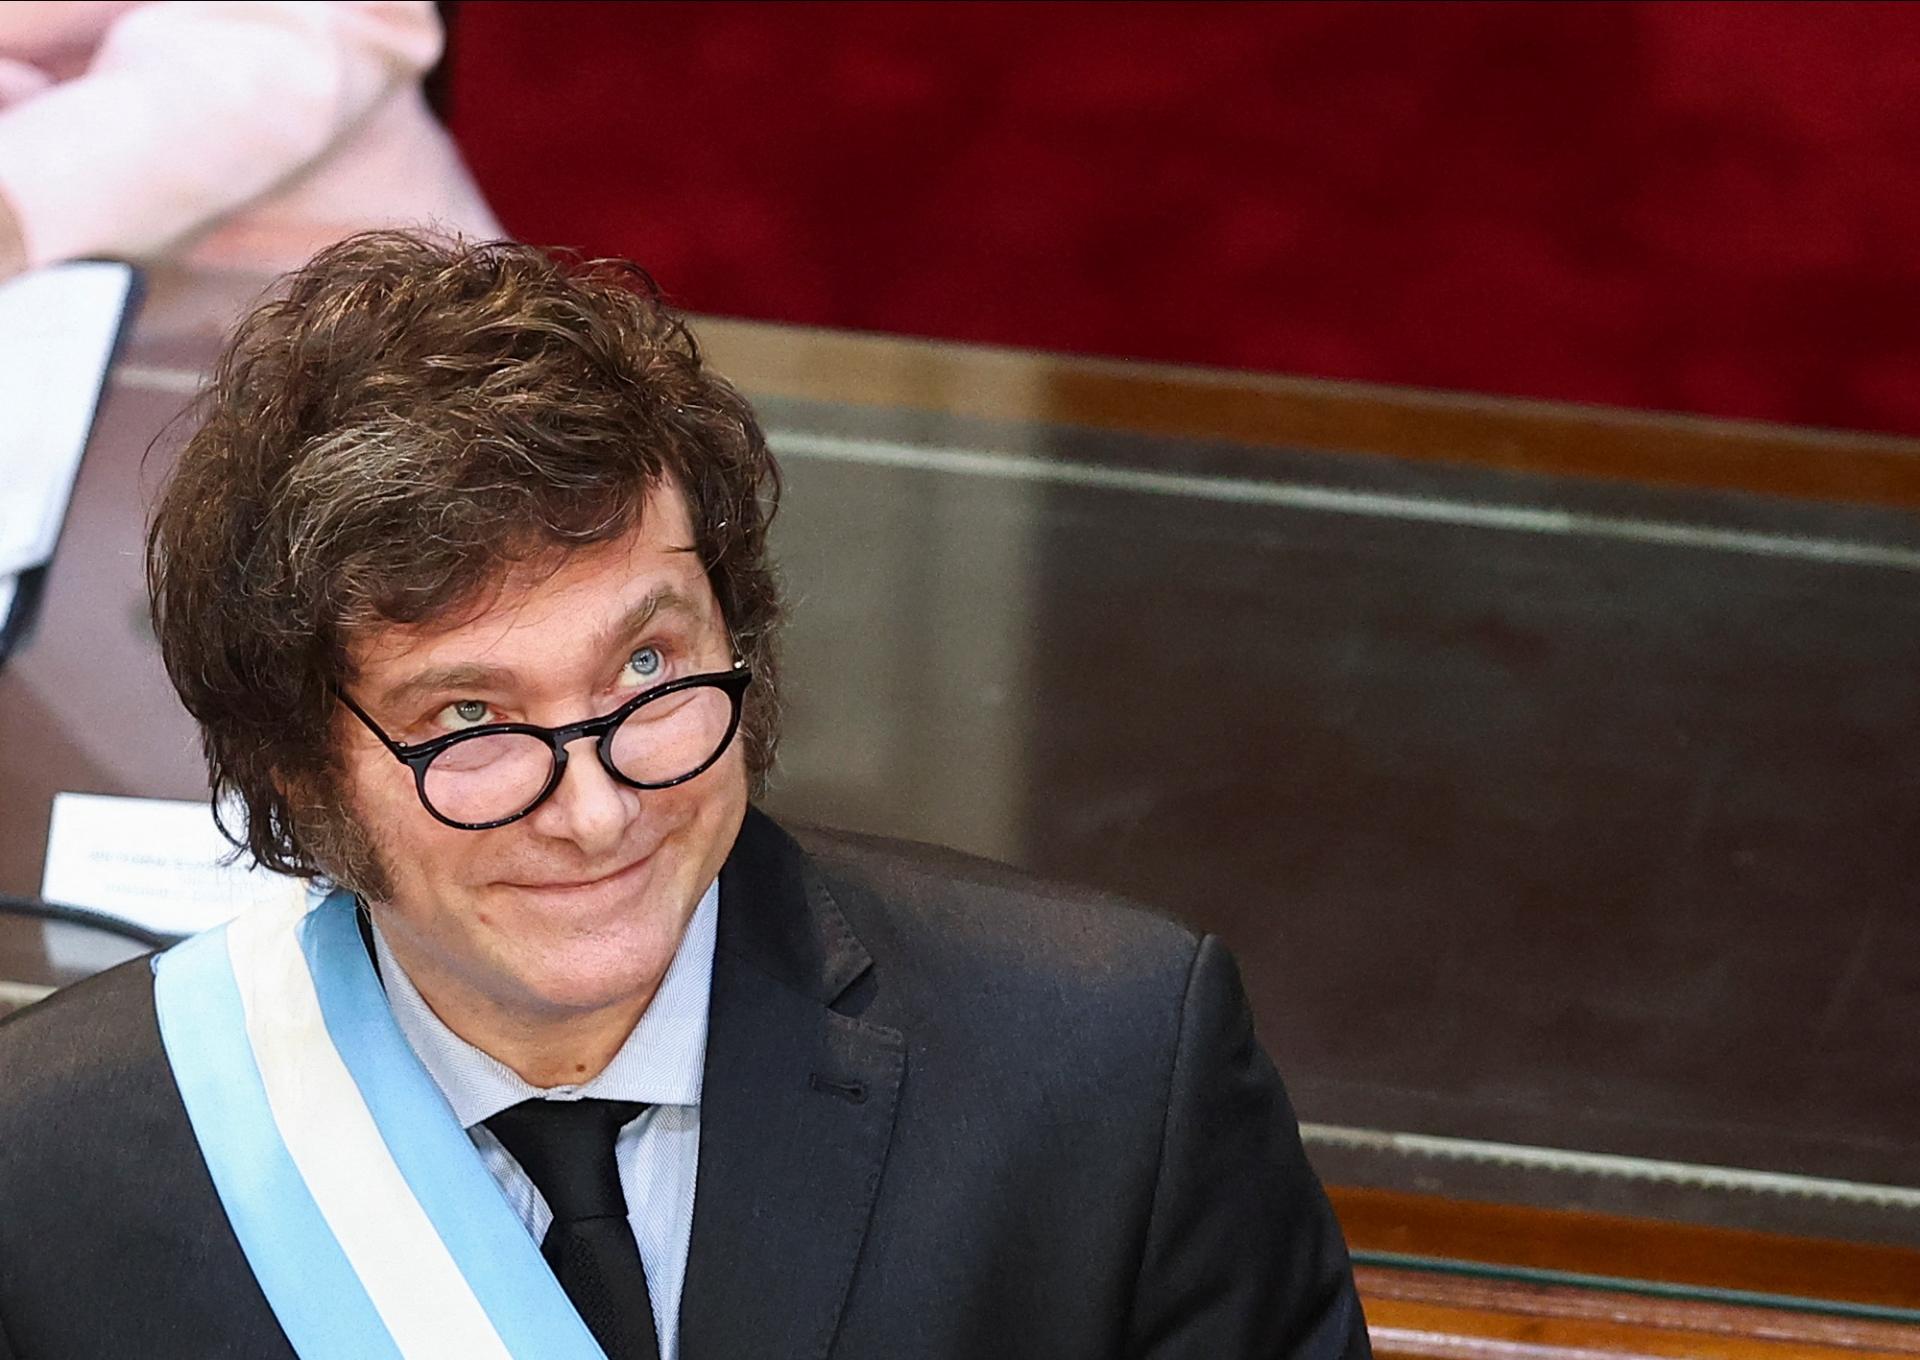 Argentínsky prezident je odhodlaný vládnuť aj bez politickej podpory parlamentu